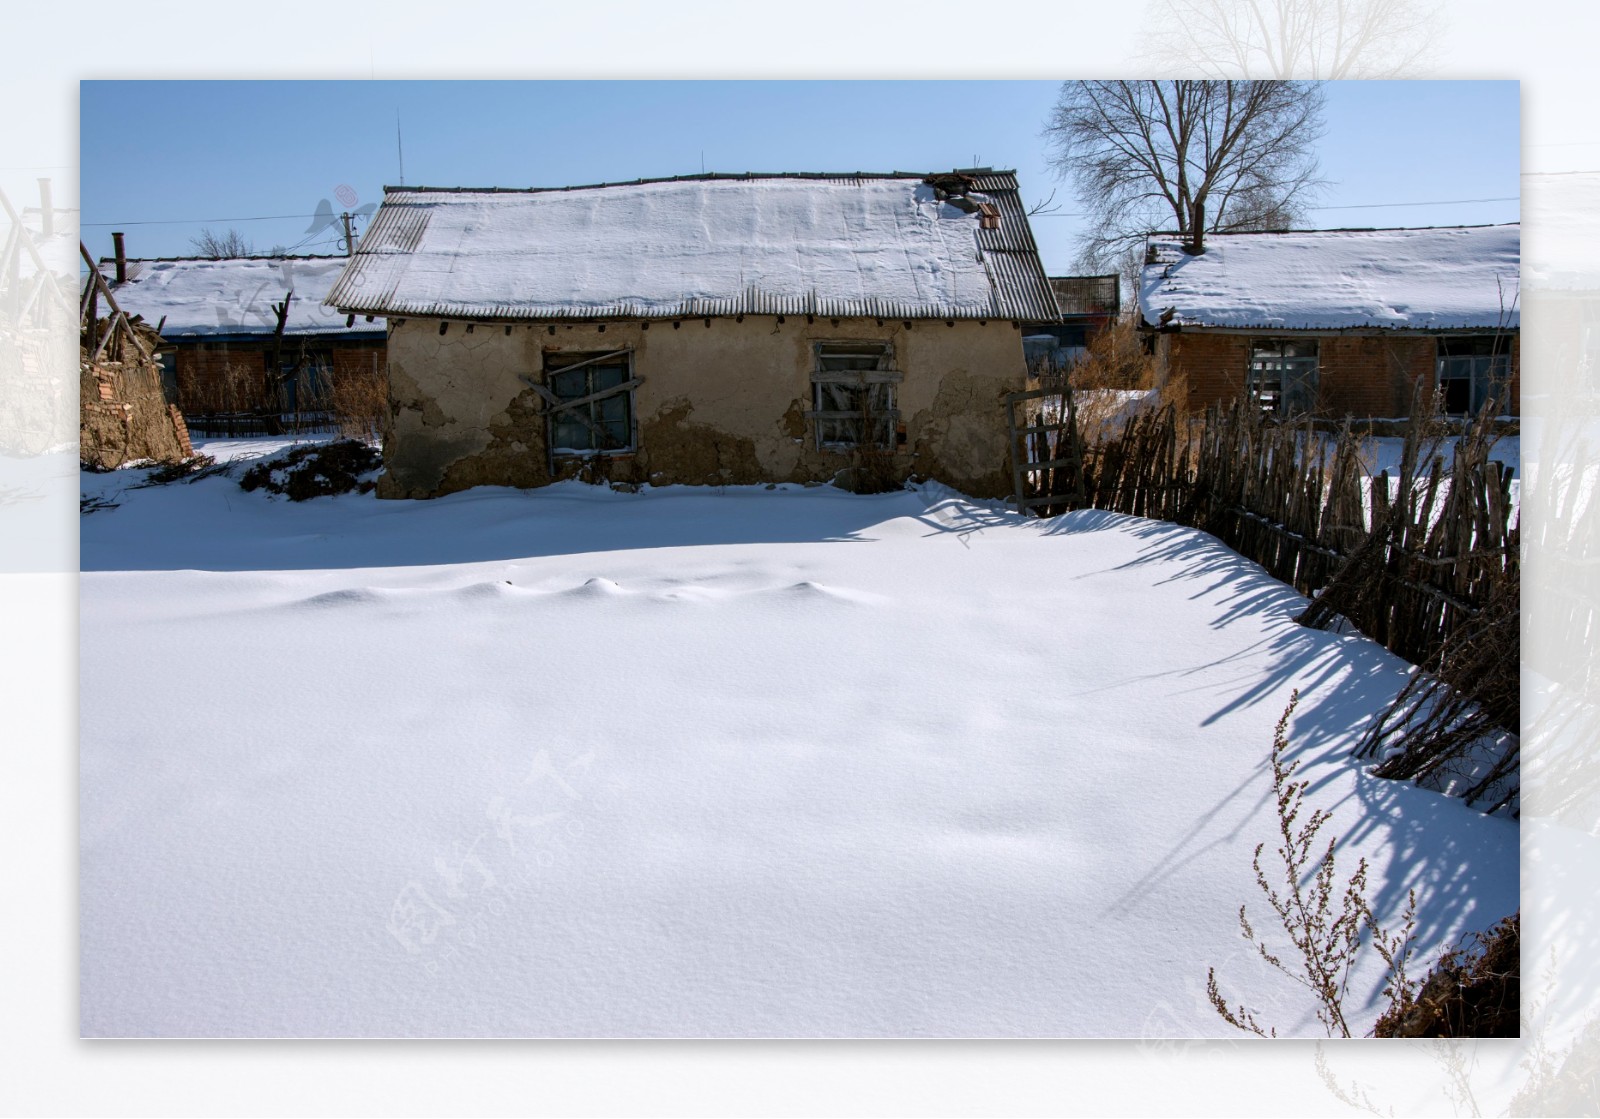 冬季村庄图片